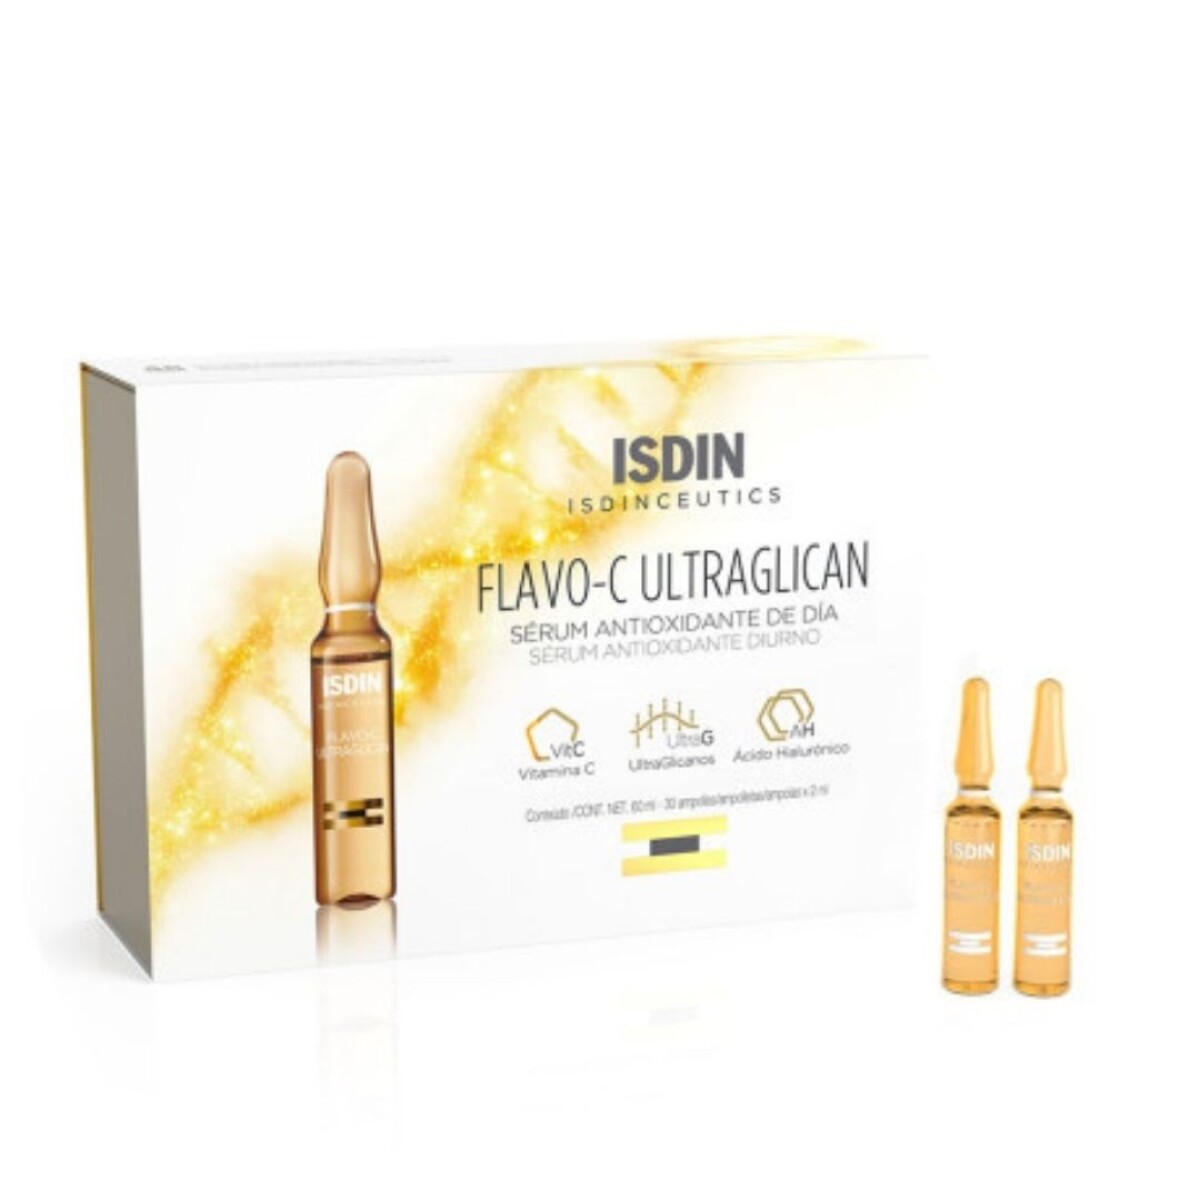 Isdinceutics Flavo-C Ultraglican - ISDIN 